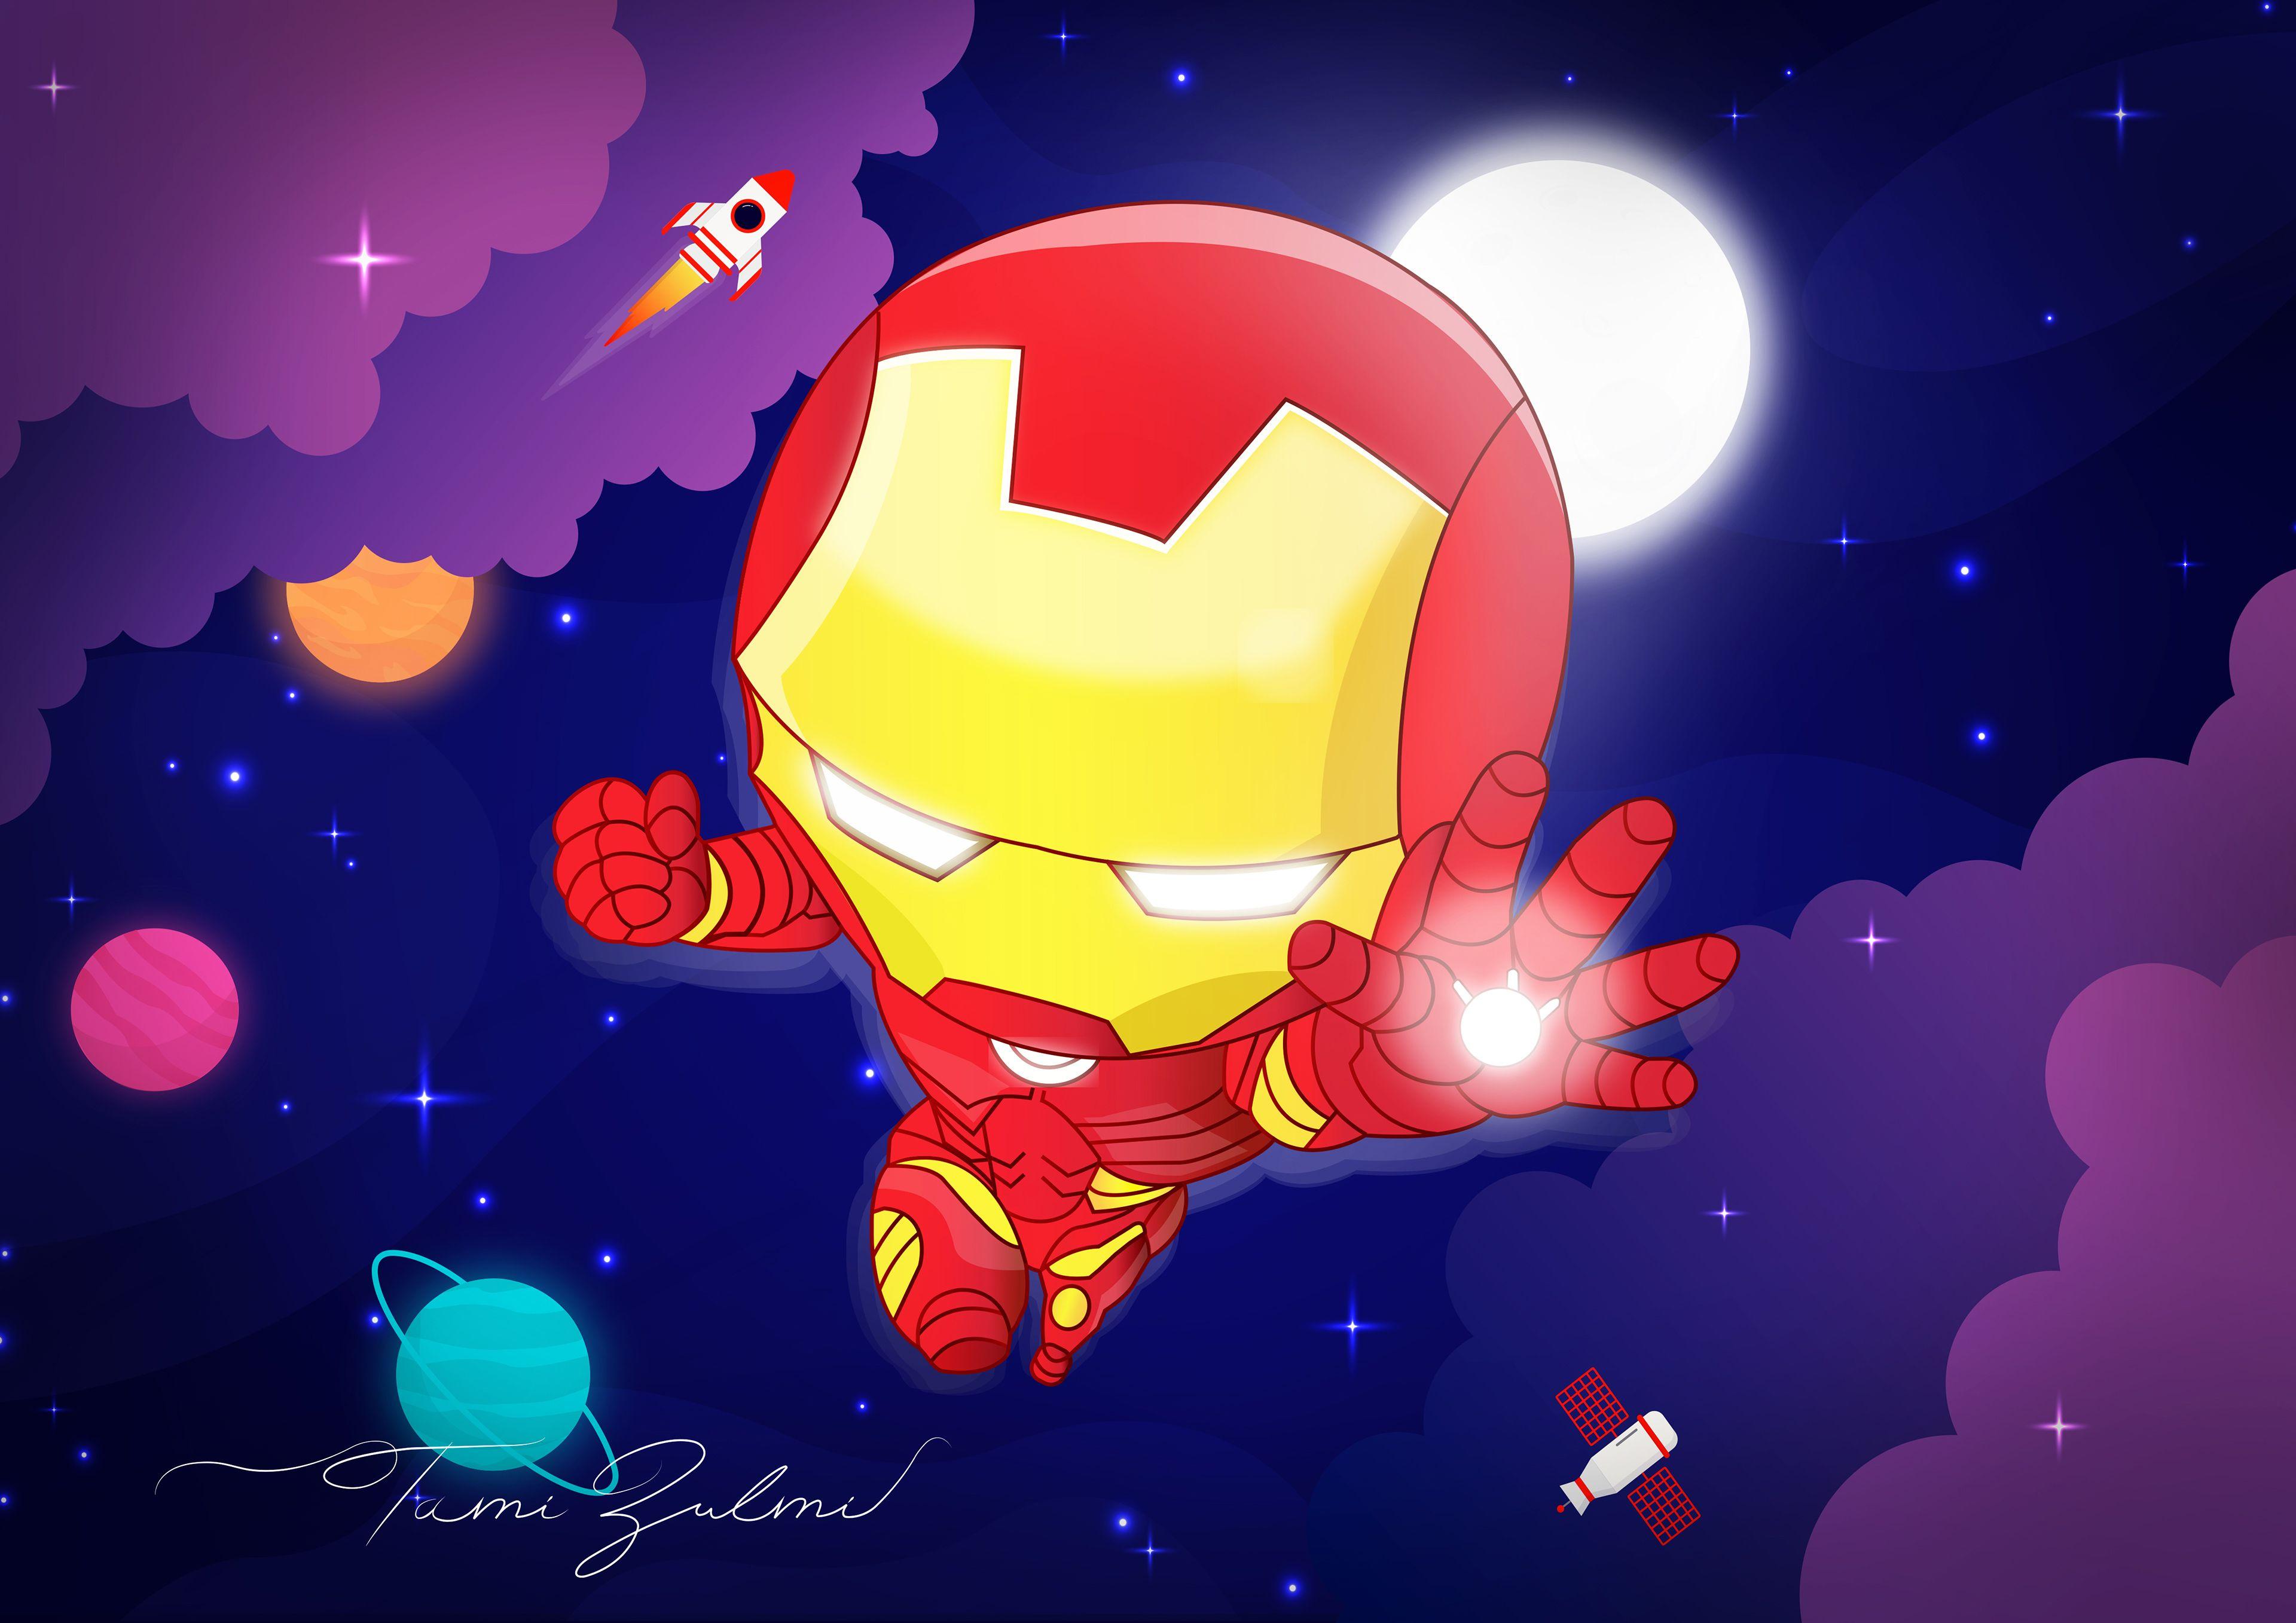 Chibi Iron Man Wallpapers   Top Free Chibi Iron Man Backgrounds ...